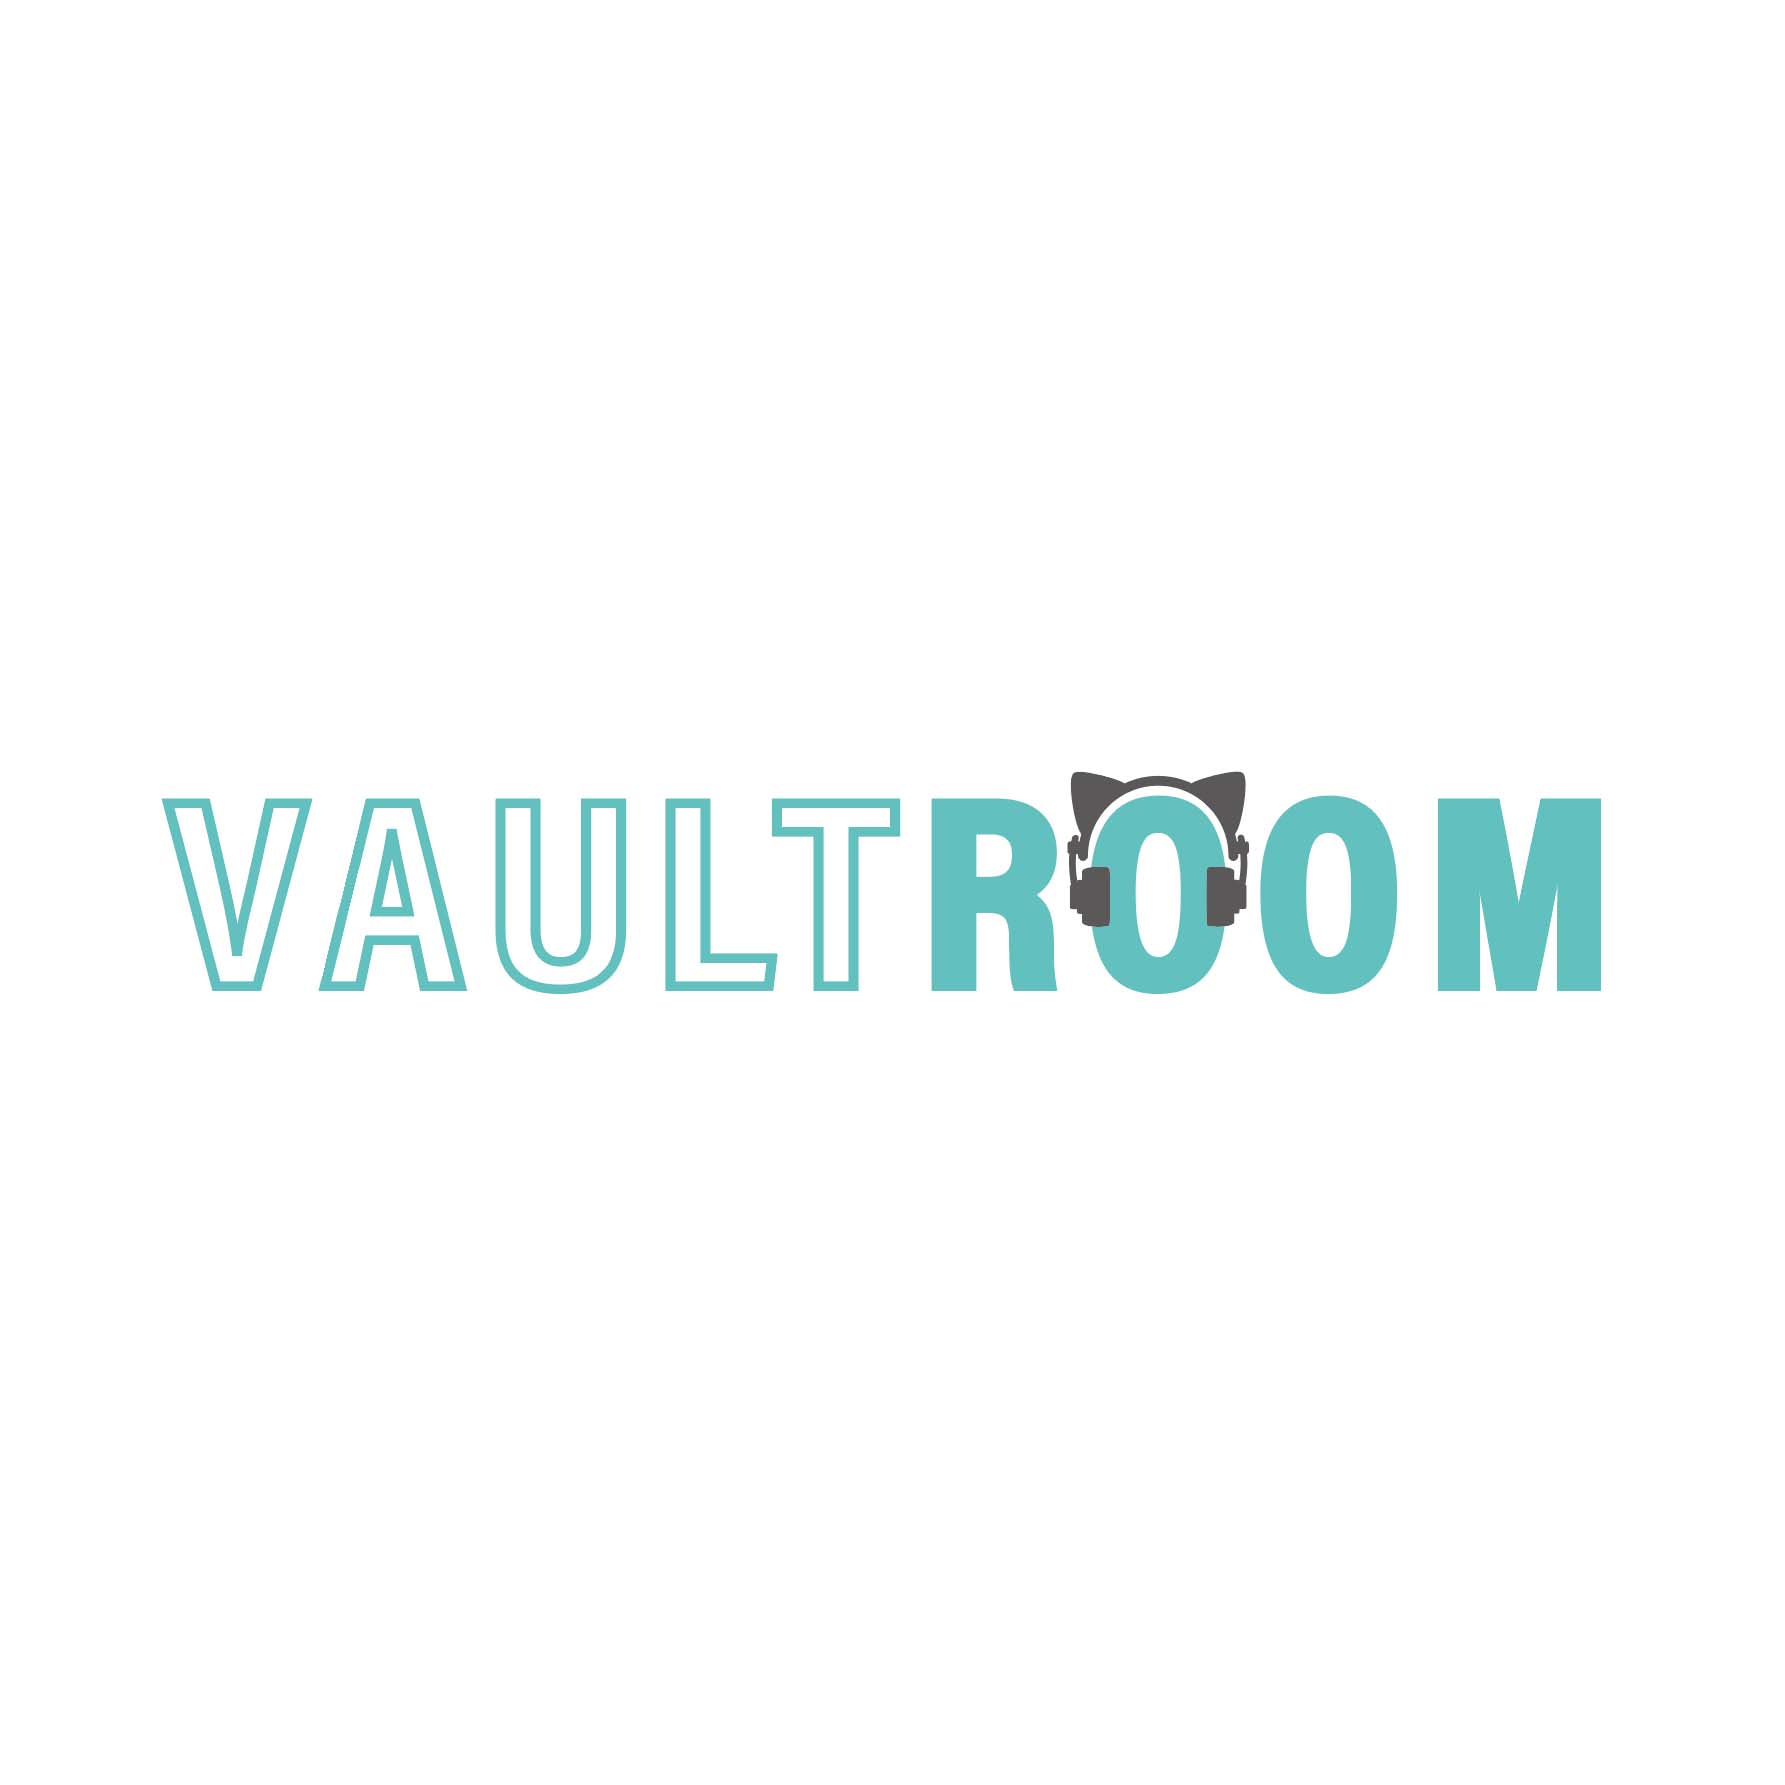 VAULTROOM ×猫麦とろろ HOODIE Lサイズ White ホワイトボルトルーム